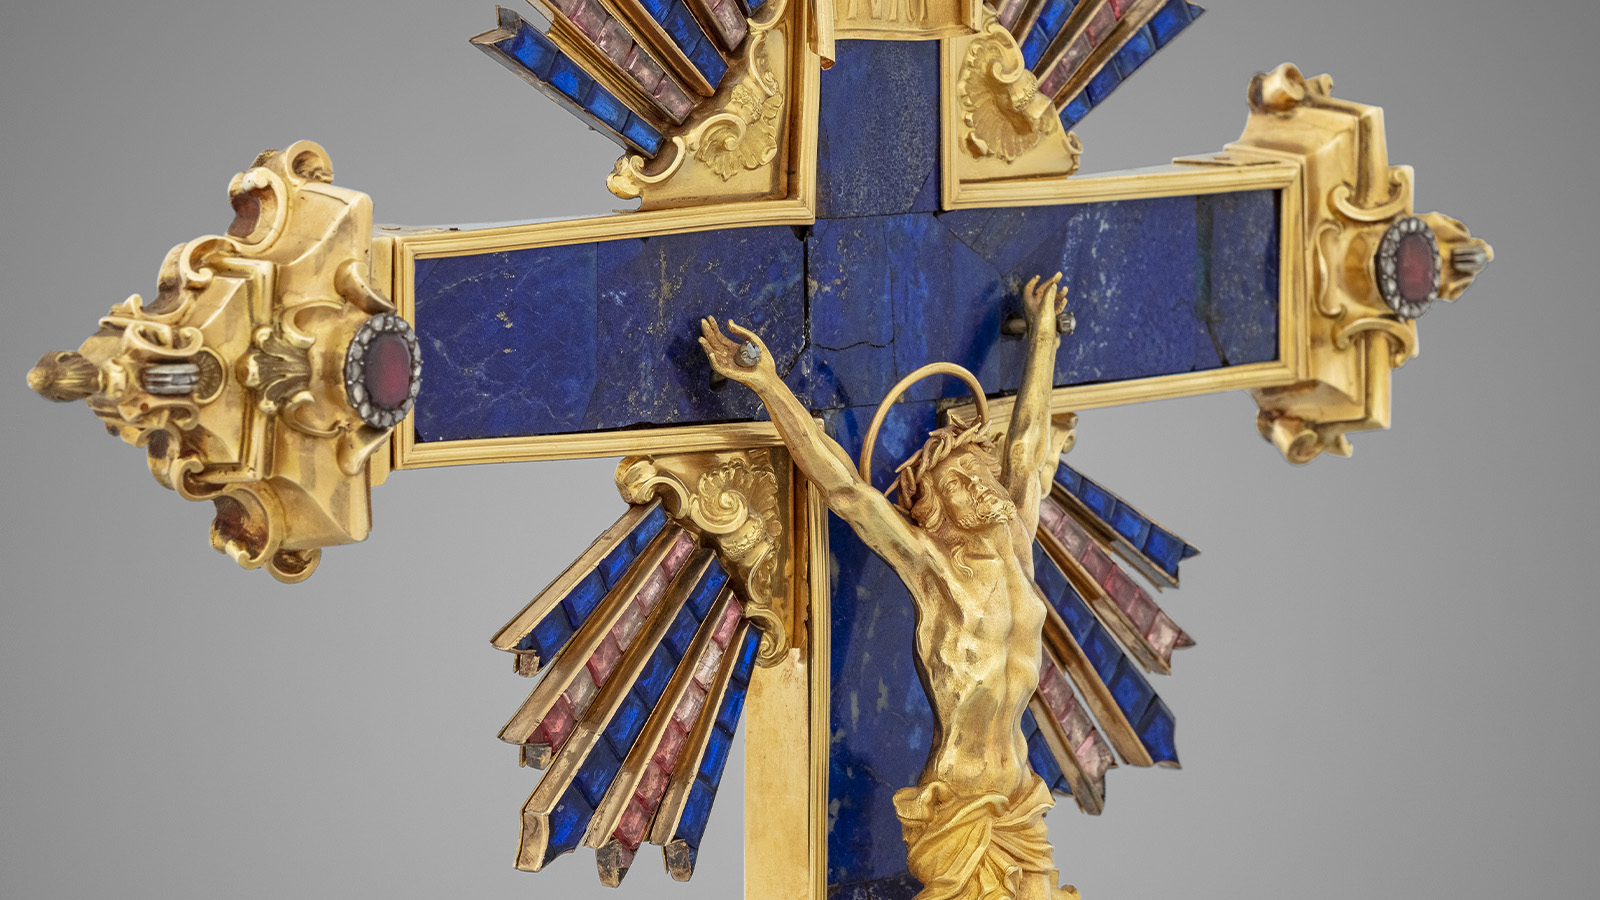 Crucifix [detail]. Naples, Italy, 1756. Gold, lapis lazuli and gemstones. Custody of the Holy Land, Jerusalem.